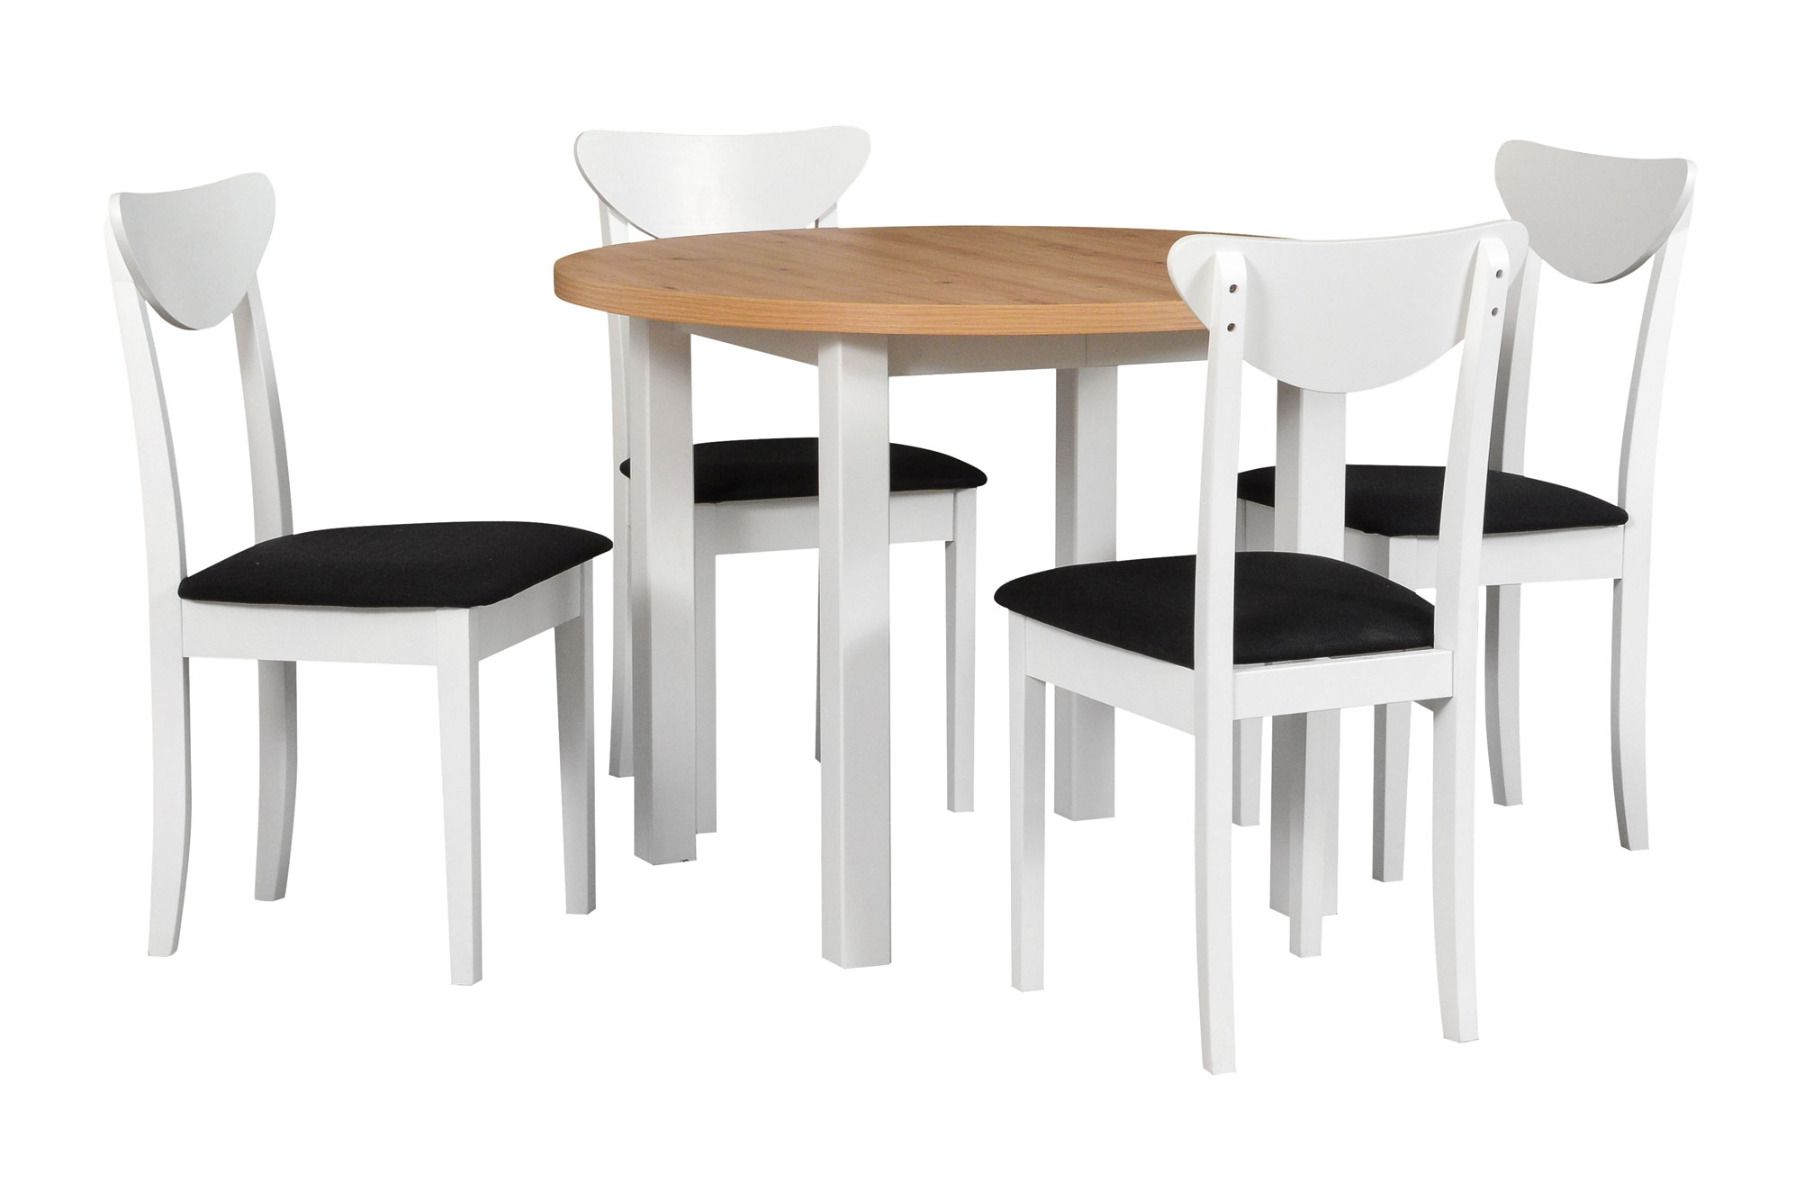 Esszimmer Komplett - Set N, 5 - teilig, runder Holztisch ausziehbar, 4 Holzstühle mit Polsterung, Holzfarbe: Weiß/Eiche, Stofffarbe: Schwarz